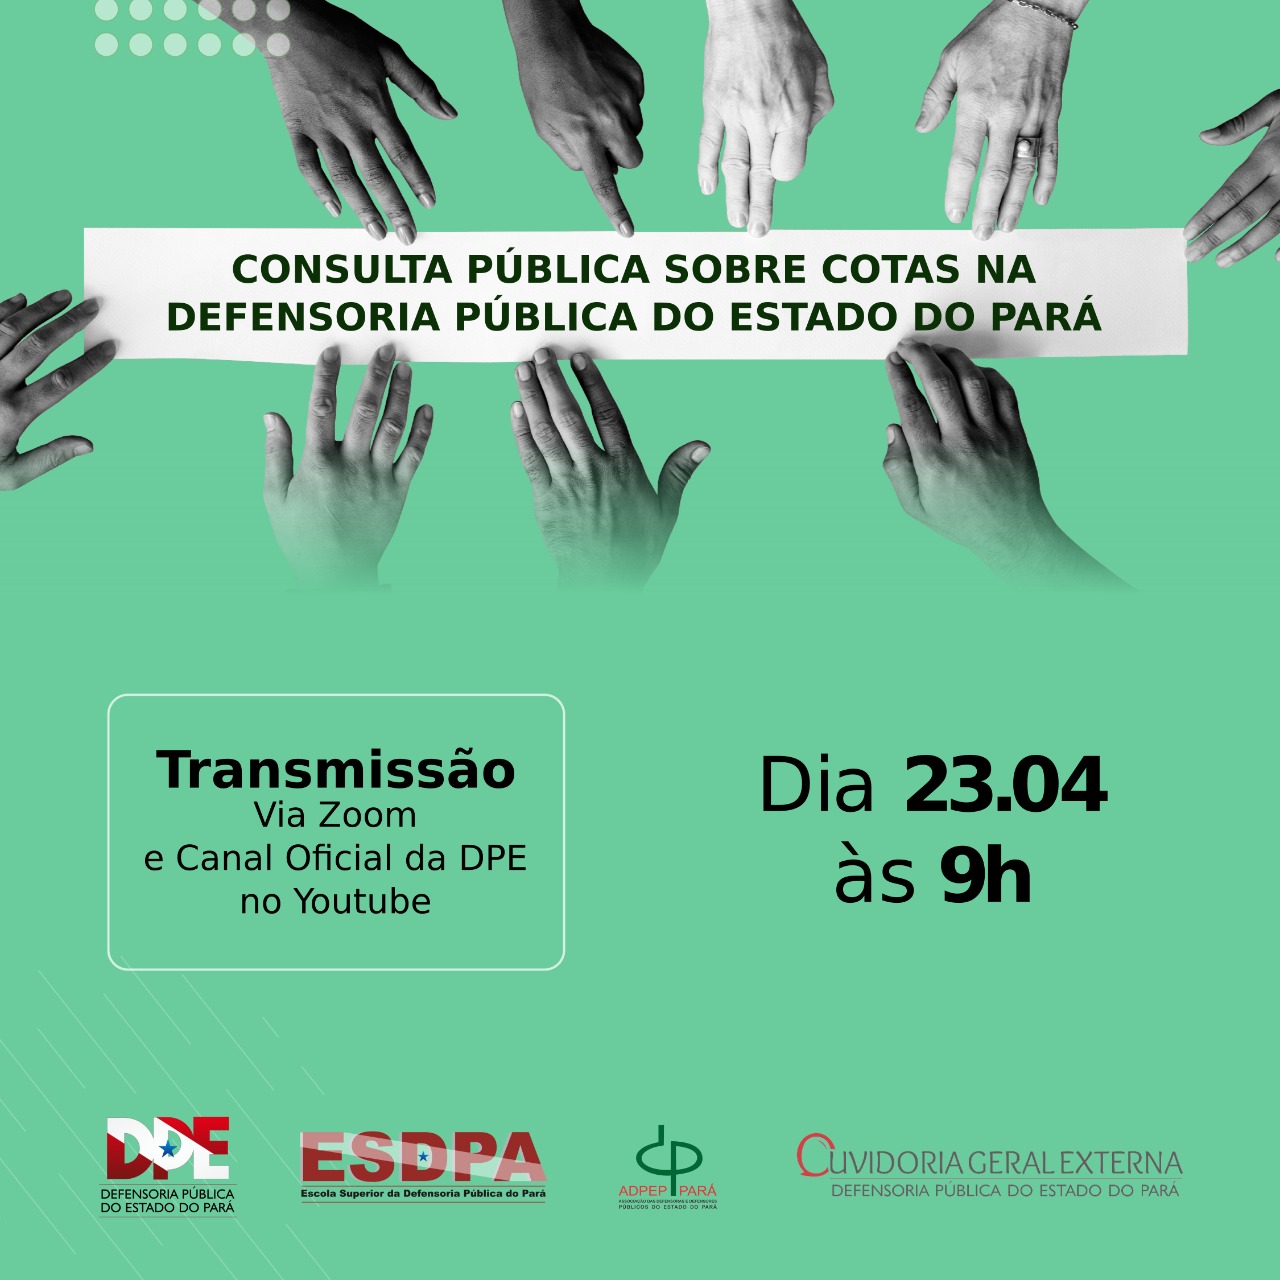 Consulta Pública Sobre Cotas na Defensoria Pública do Estado do Pará